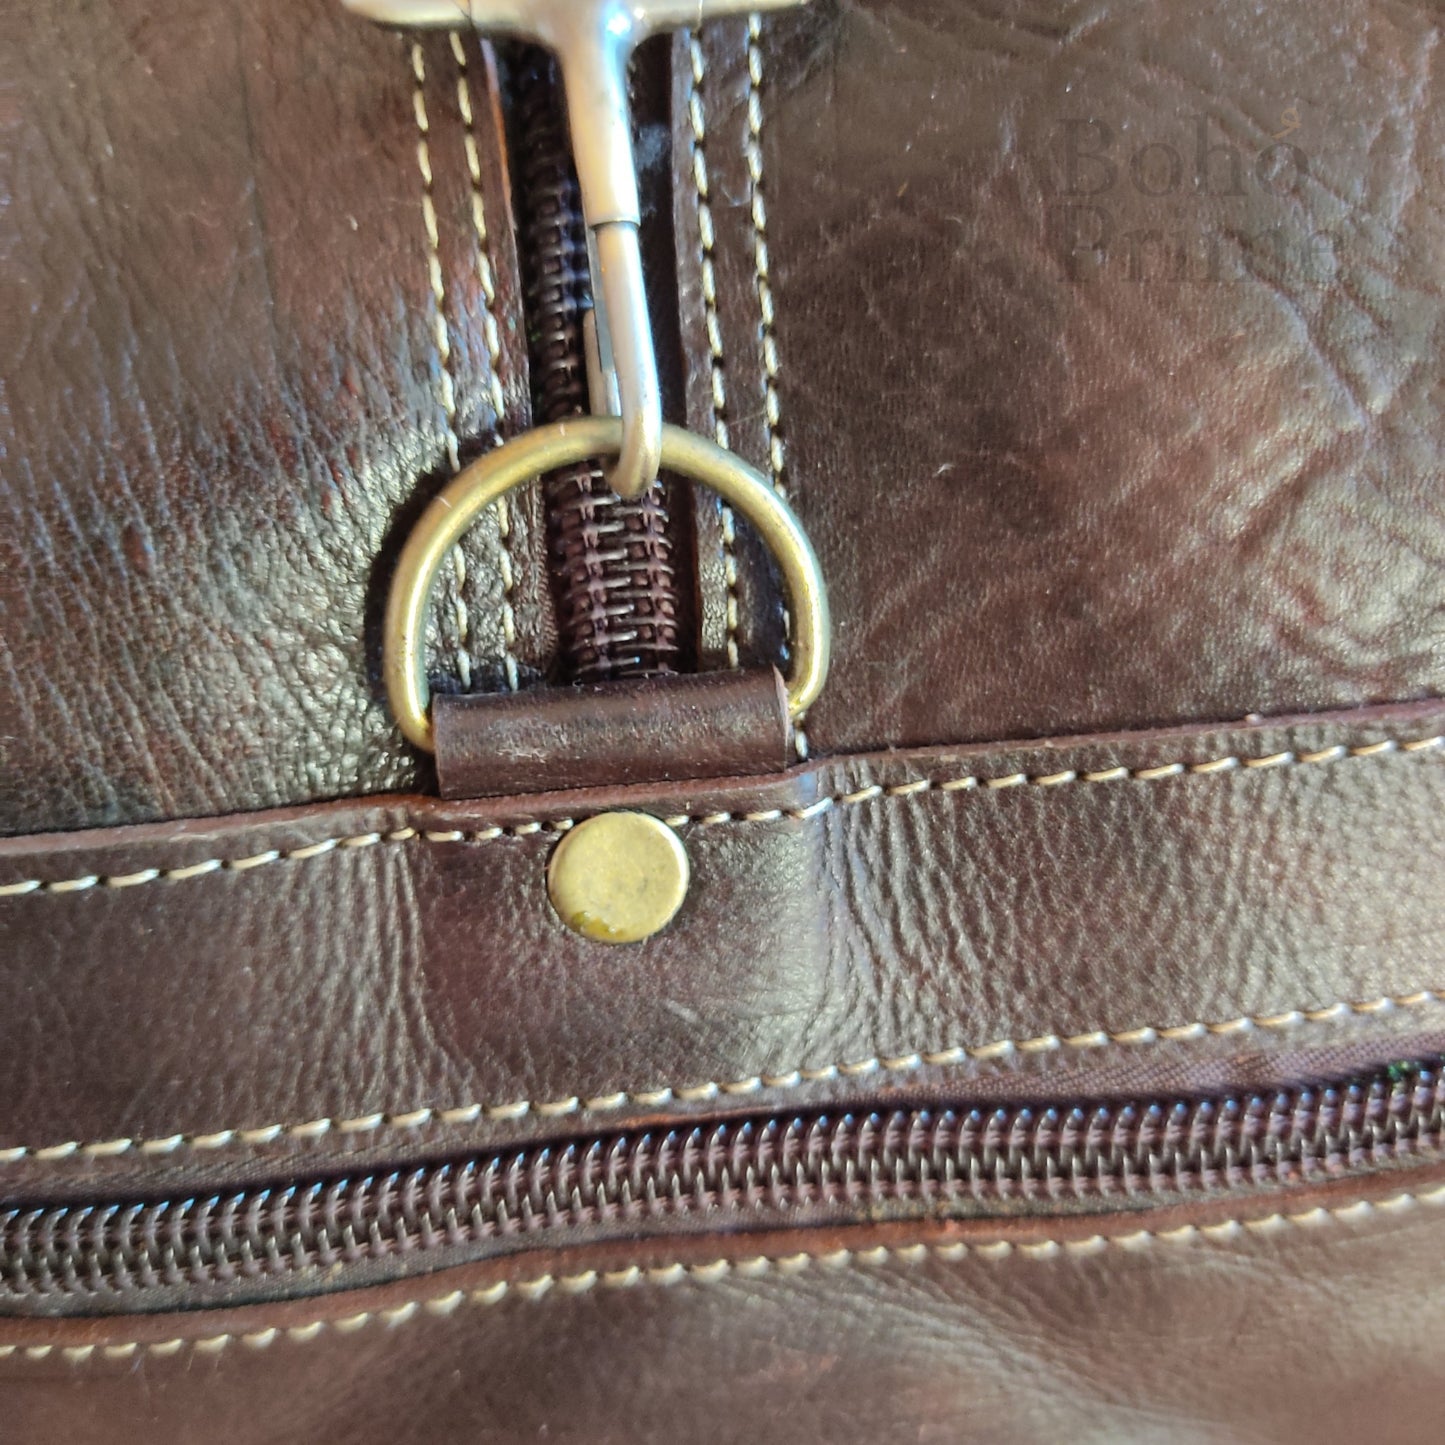 Boho Leather Travel Weekend Bag,Kilim Travel Bag, Carpet Design